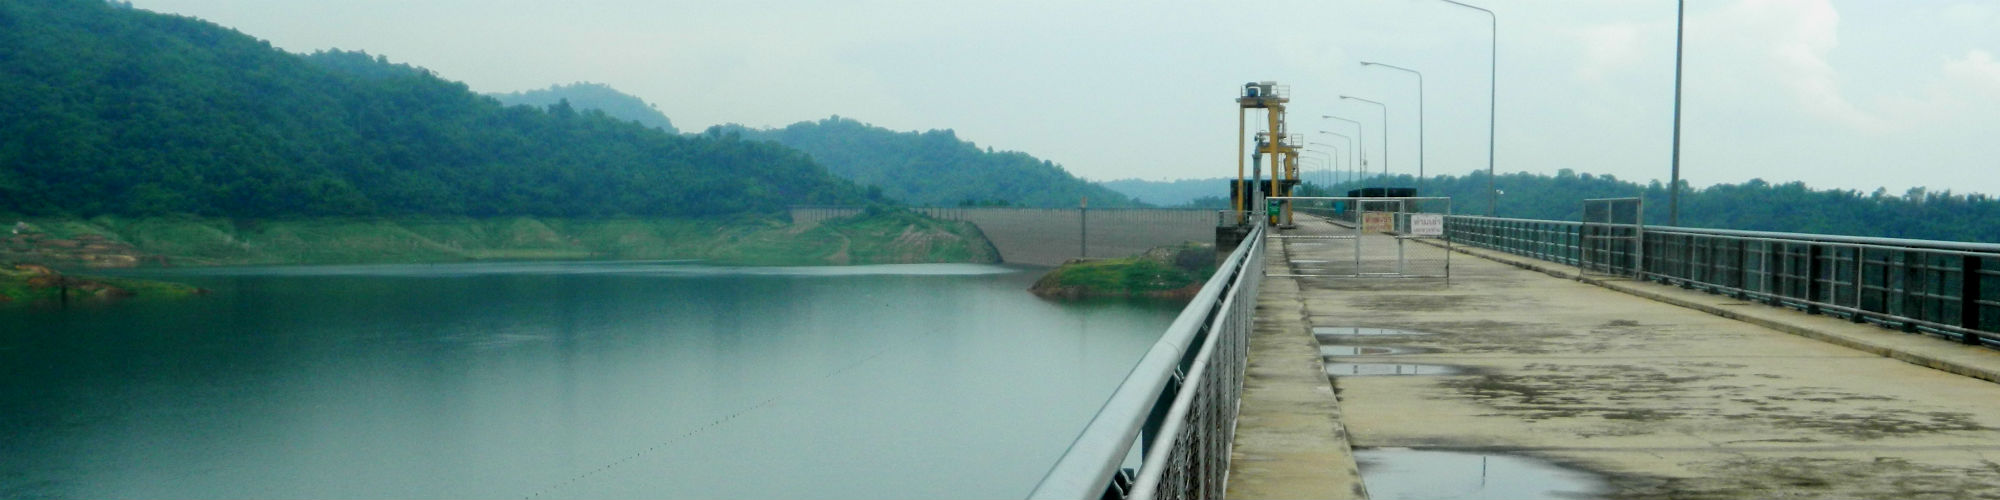 Khun Dan Prakan Chon Dam, Nakhon Nayok Province